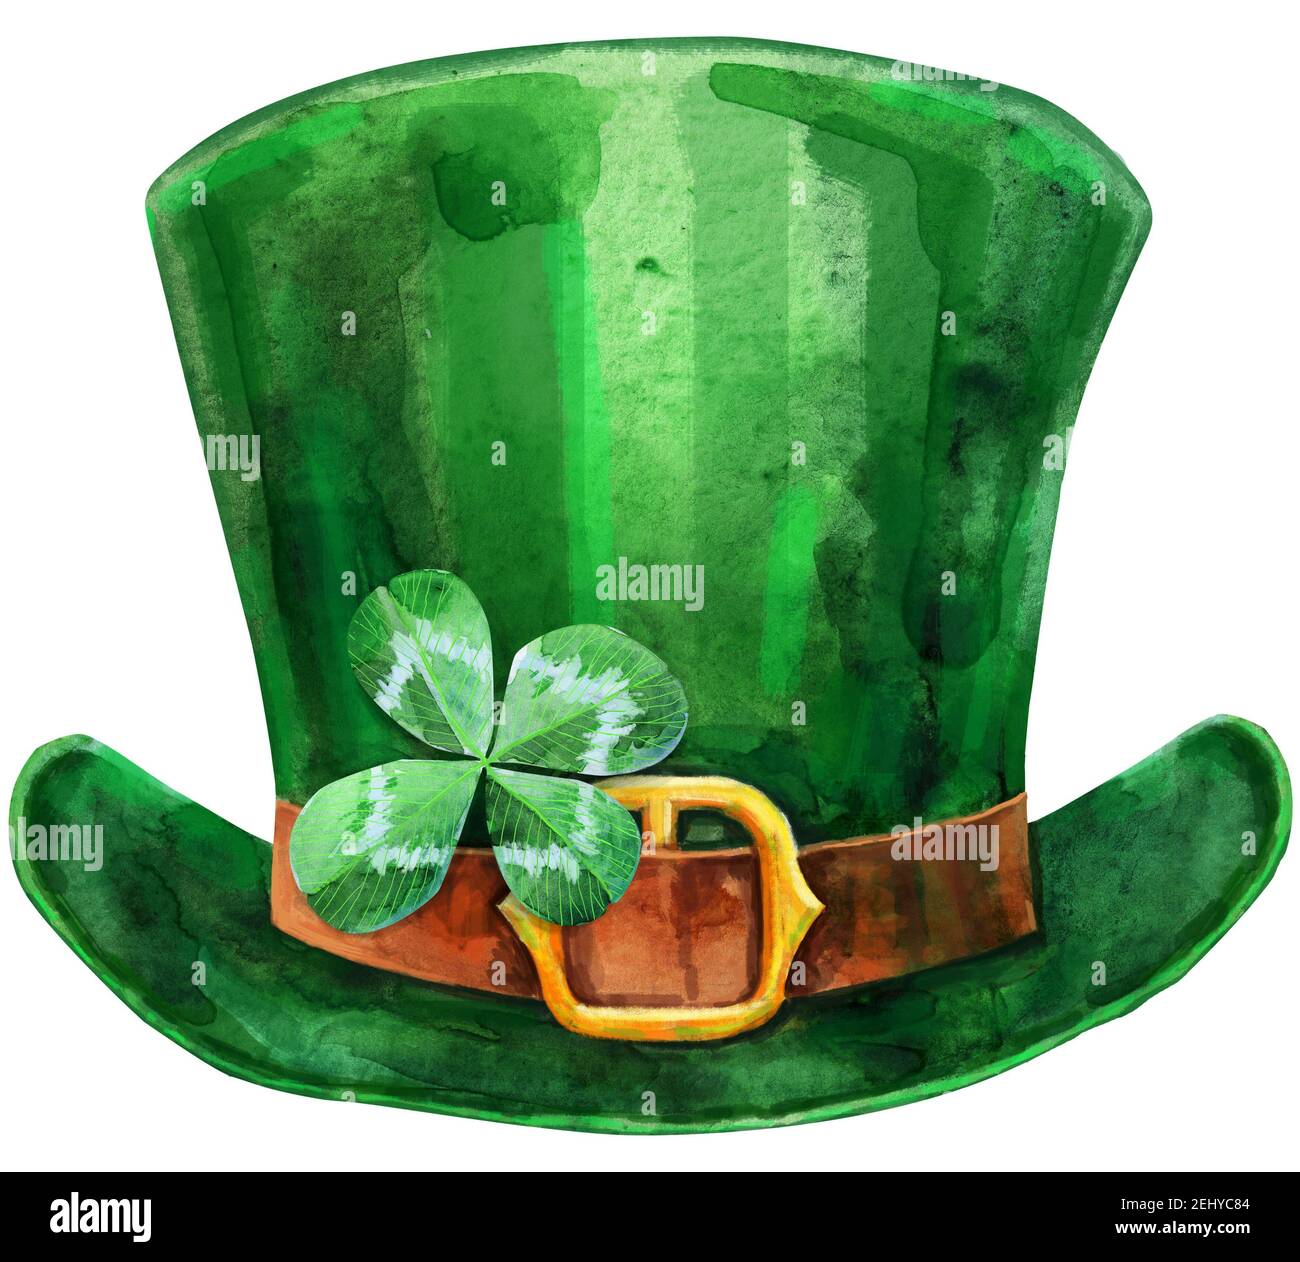 Leprechaun grüner Hut mit Kleeblatt isoliert auf weißem Hintergrund  Stockfotografie - Alamy